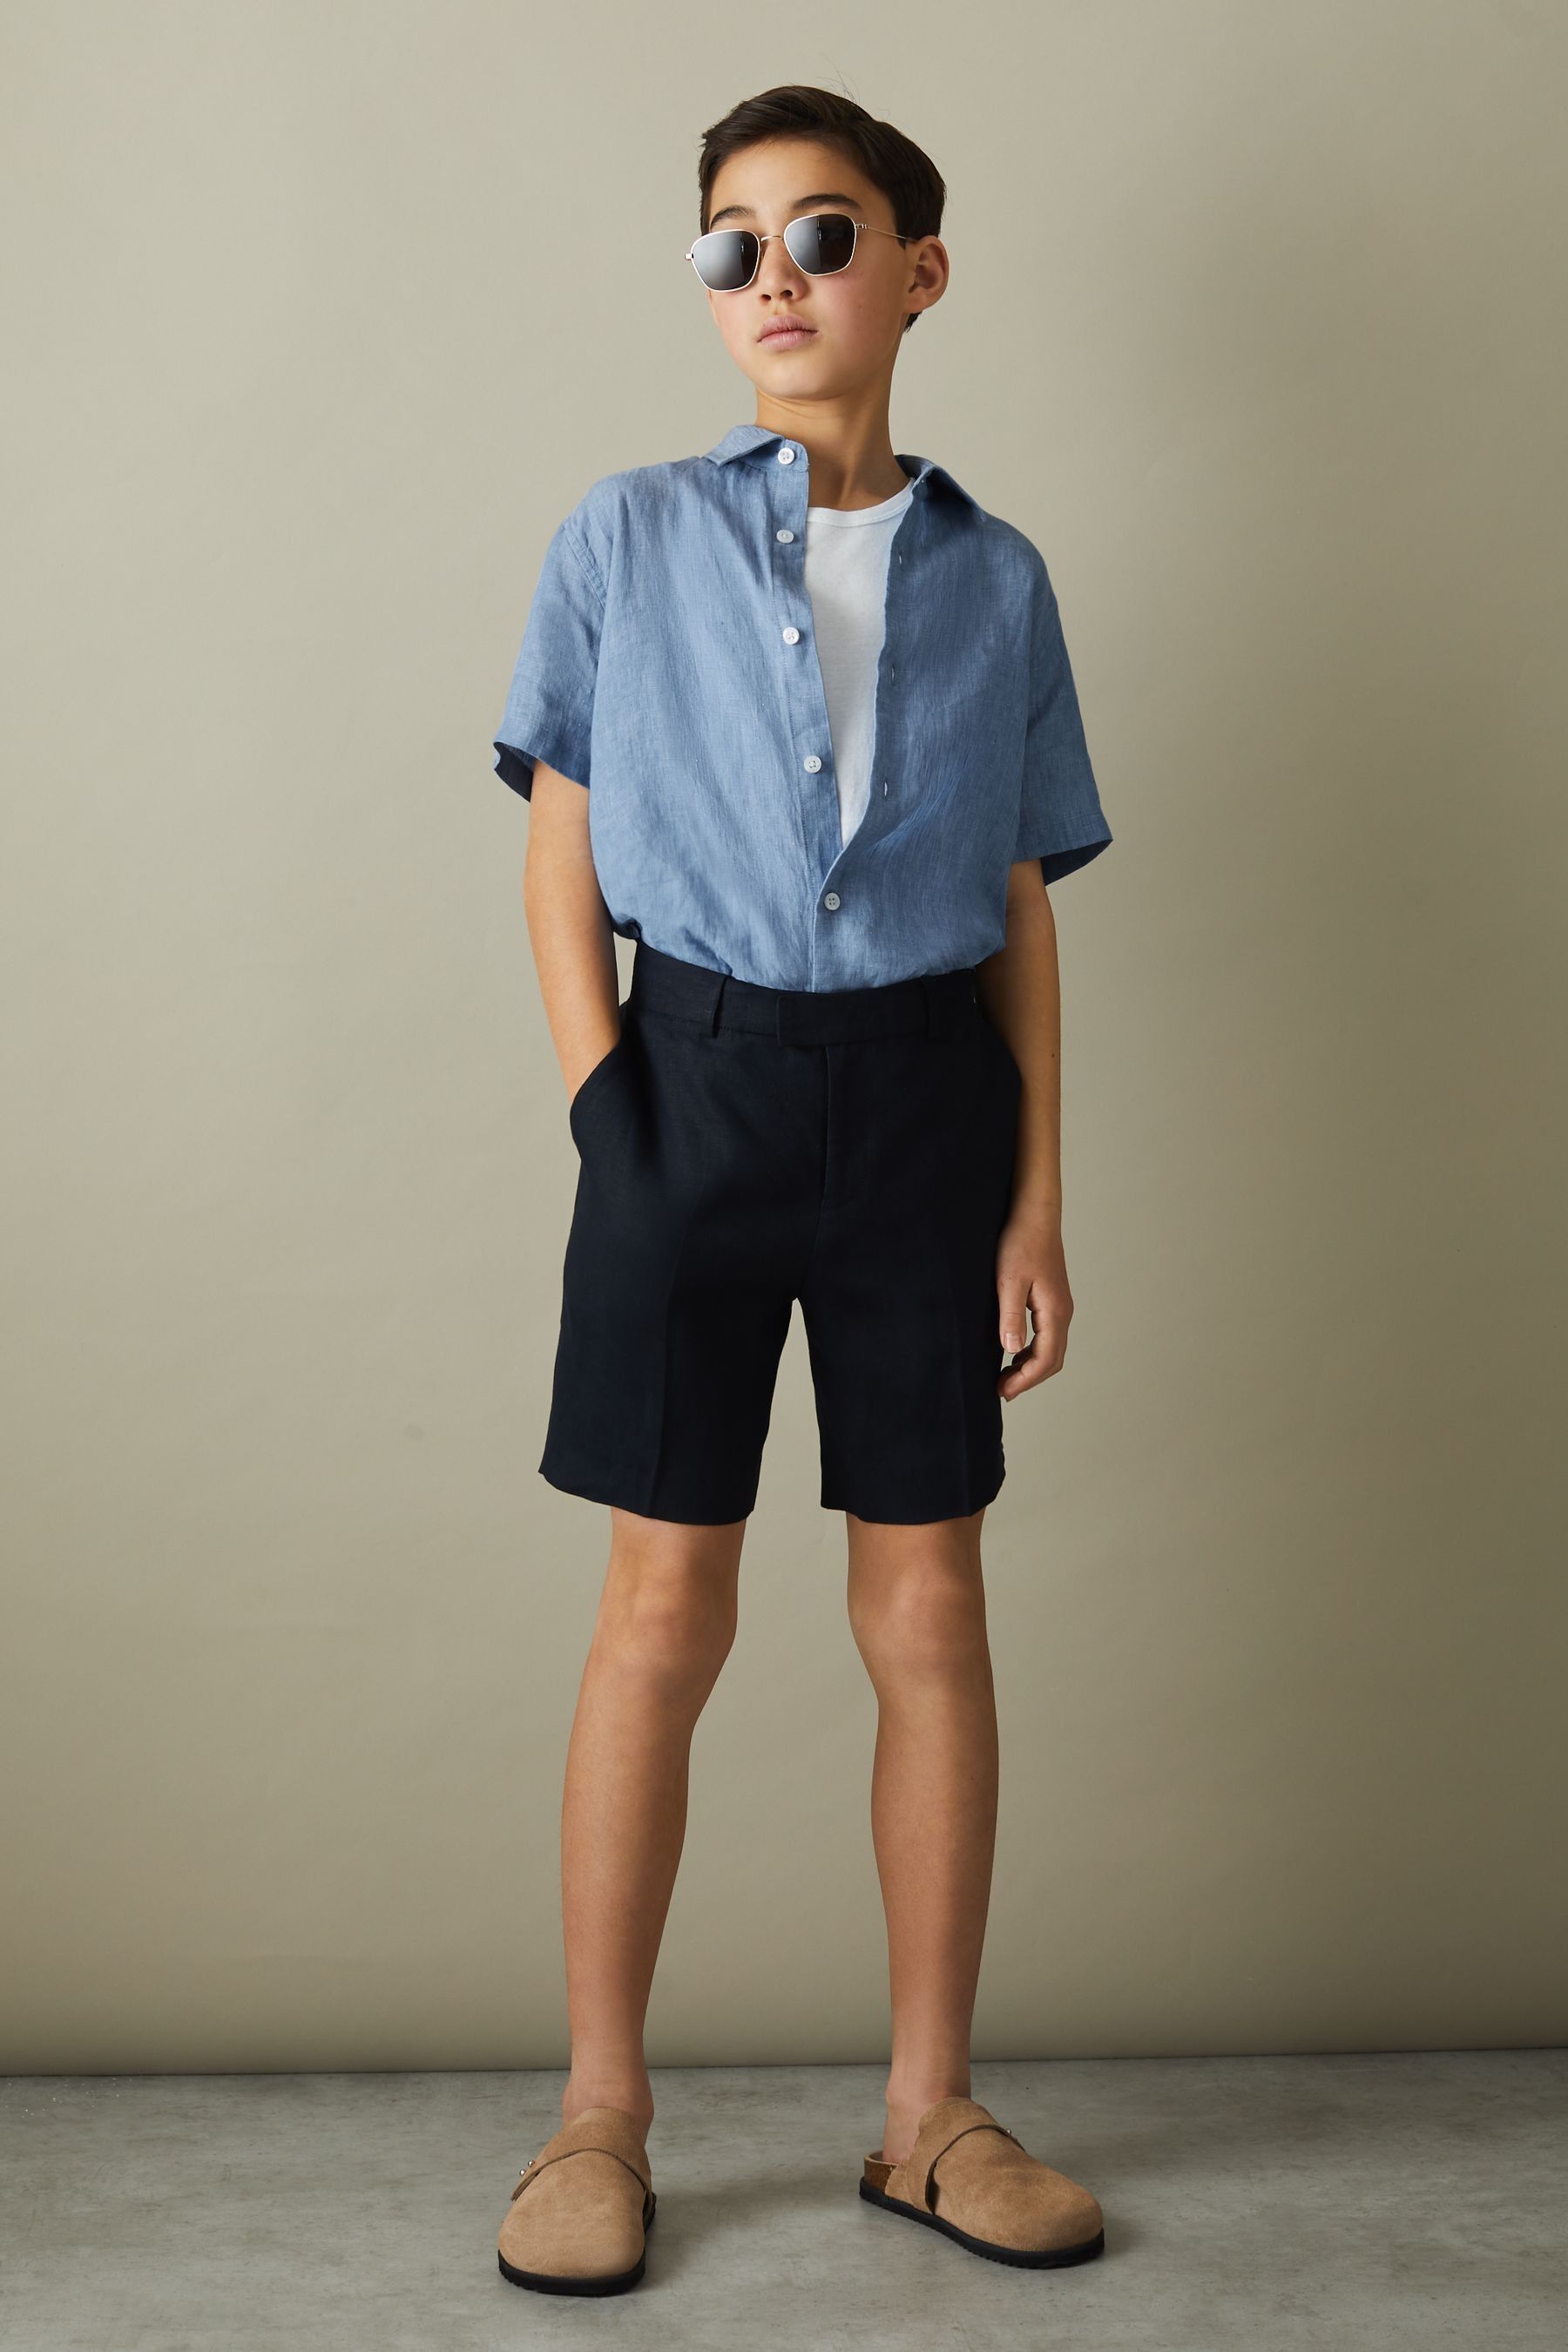 Reiss Holiday - Sky Blue Short Sleeve Linen Shirt, Uk 10-11 Yrs